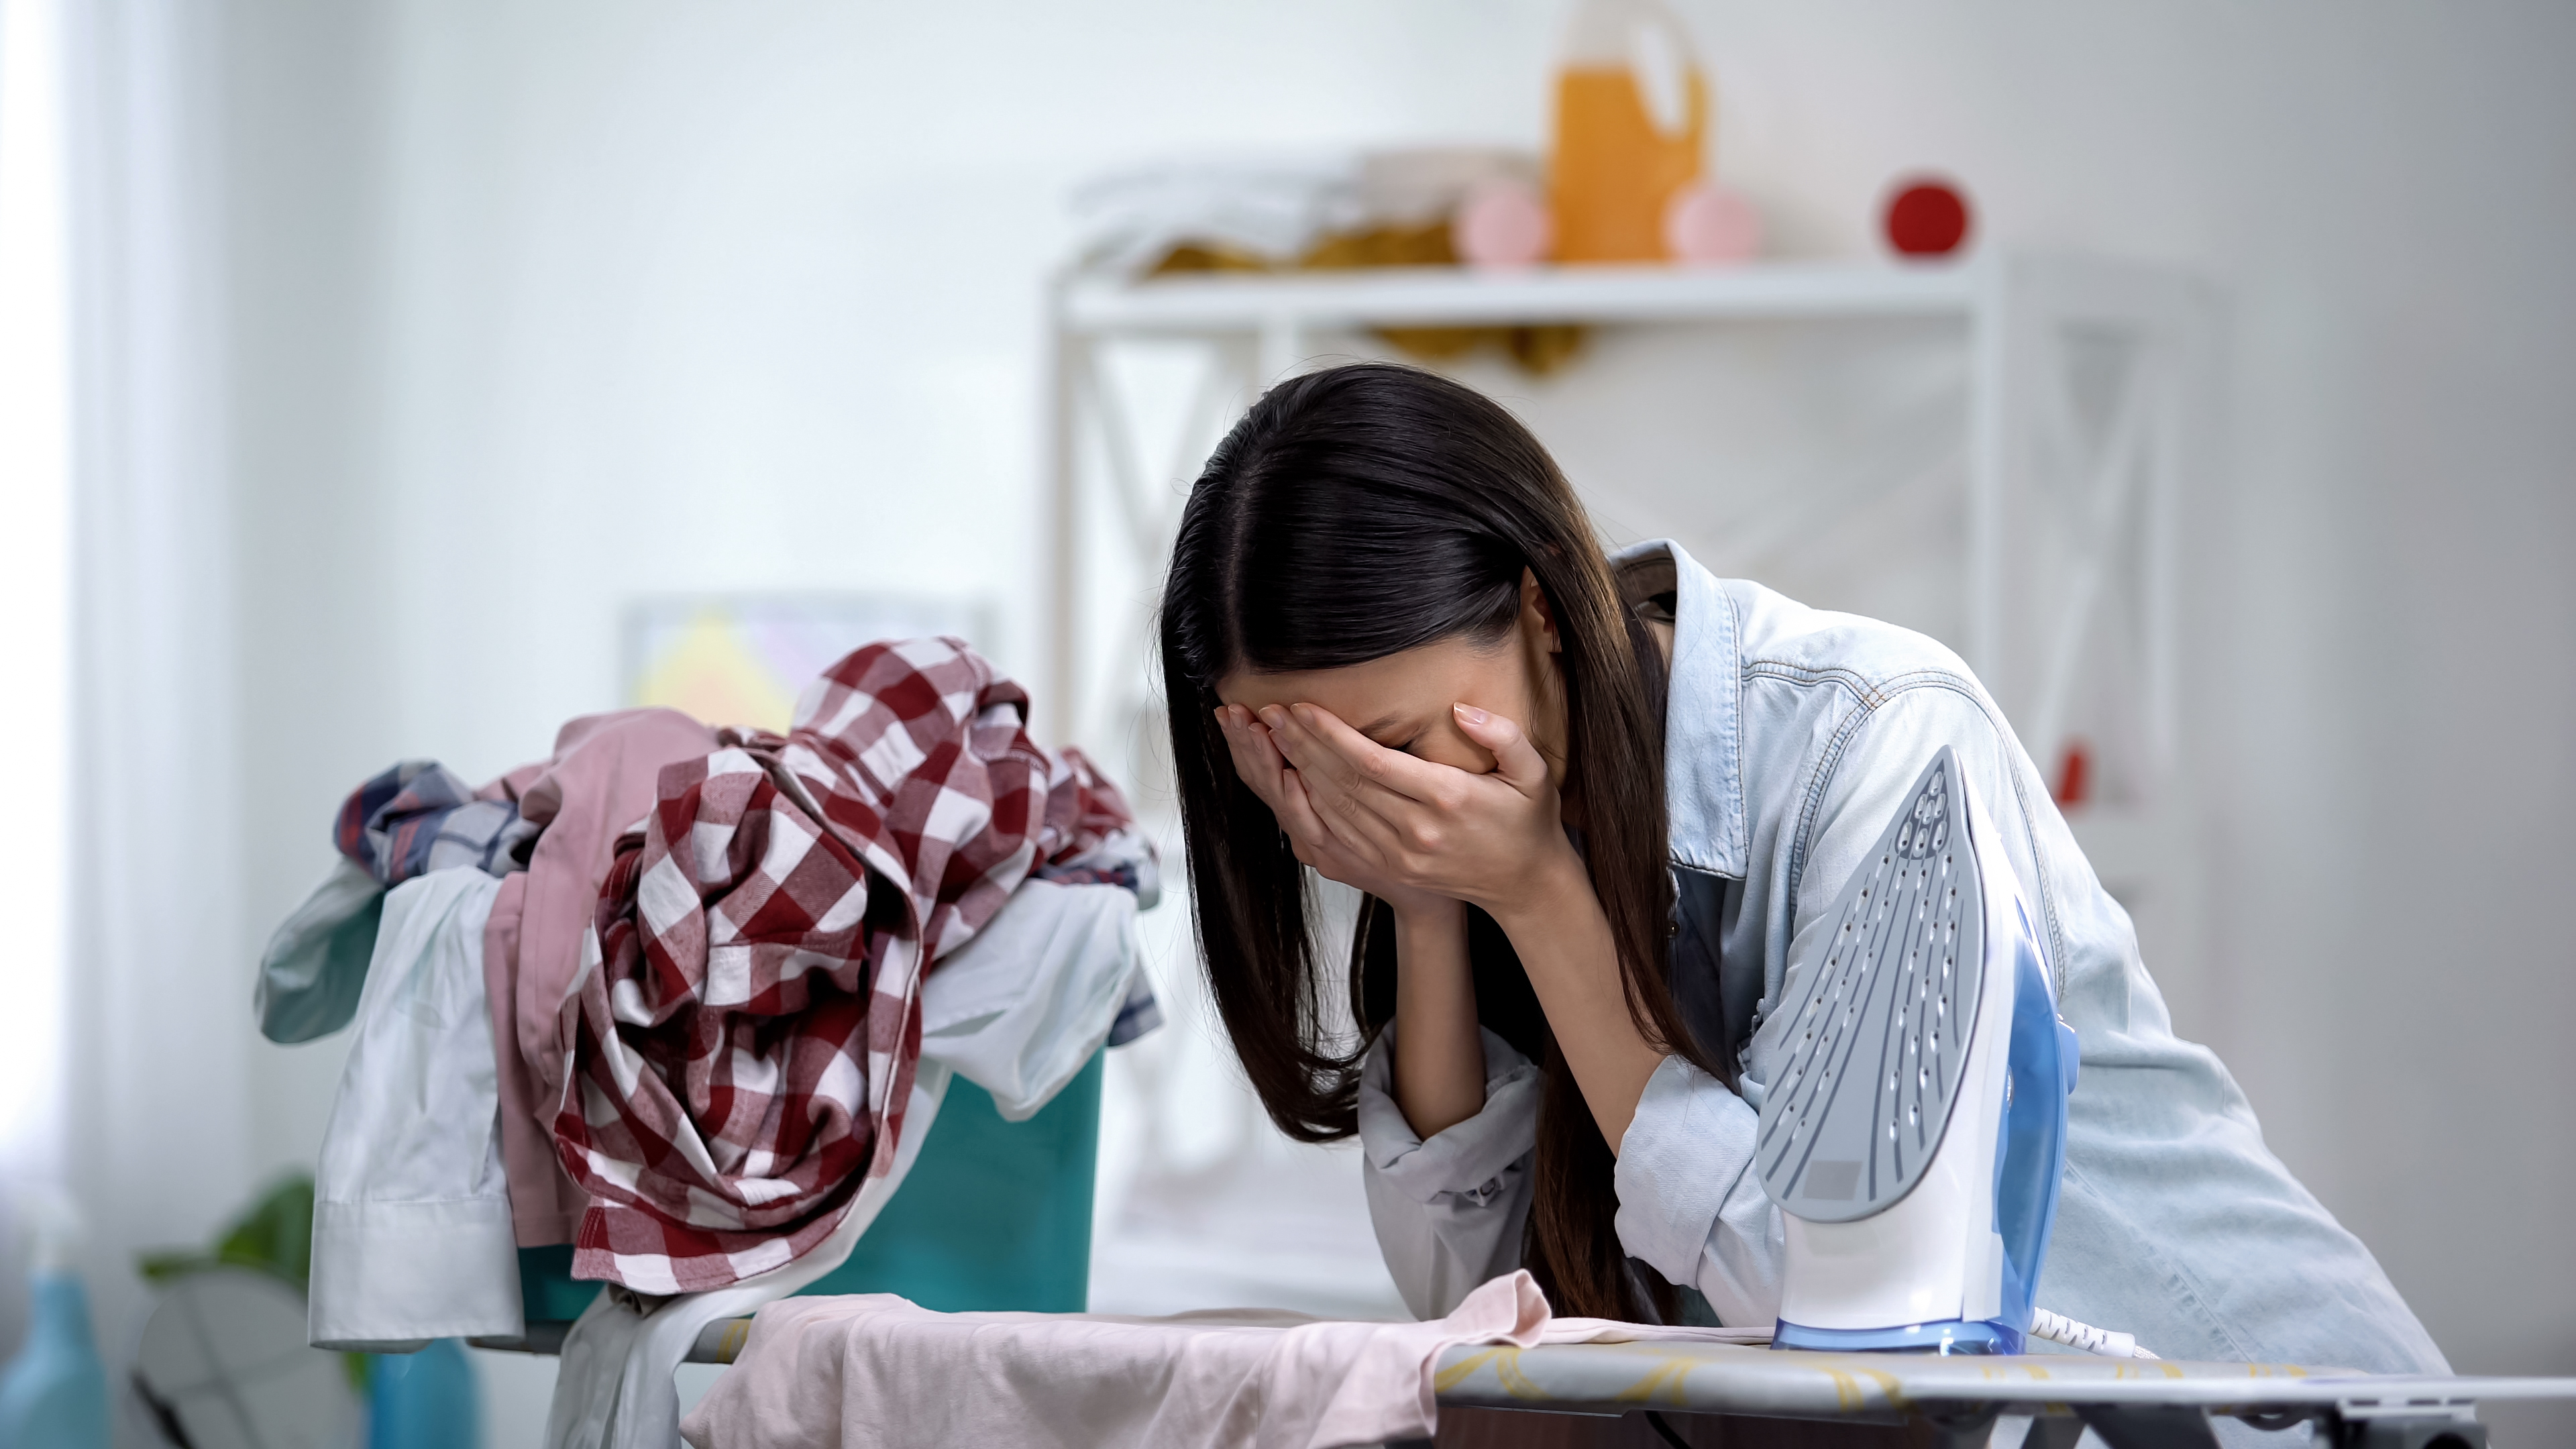 Une femme fait une crise émotionnelle en s'appuyant sur la planche à repasser | Source : Shutterstock